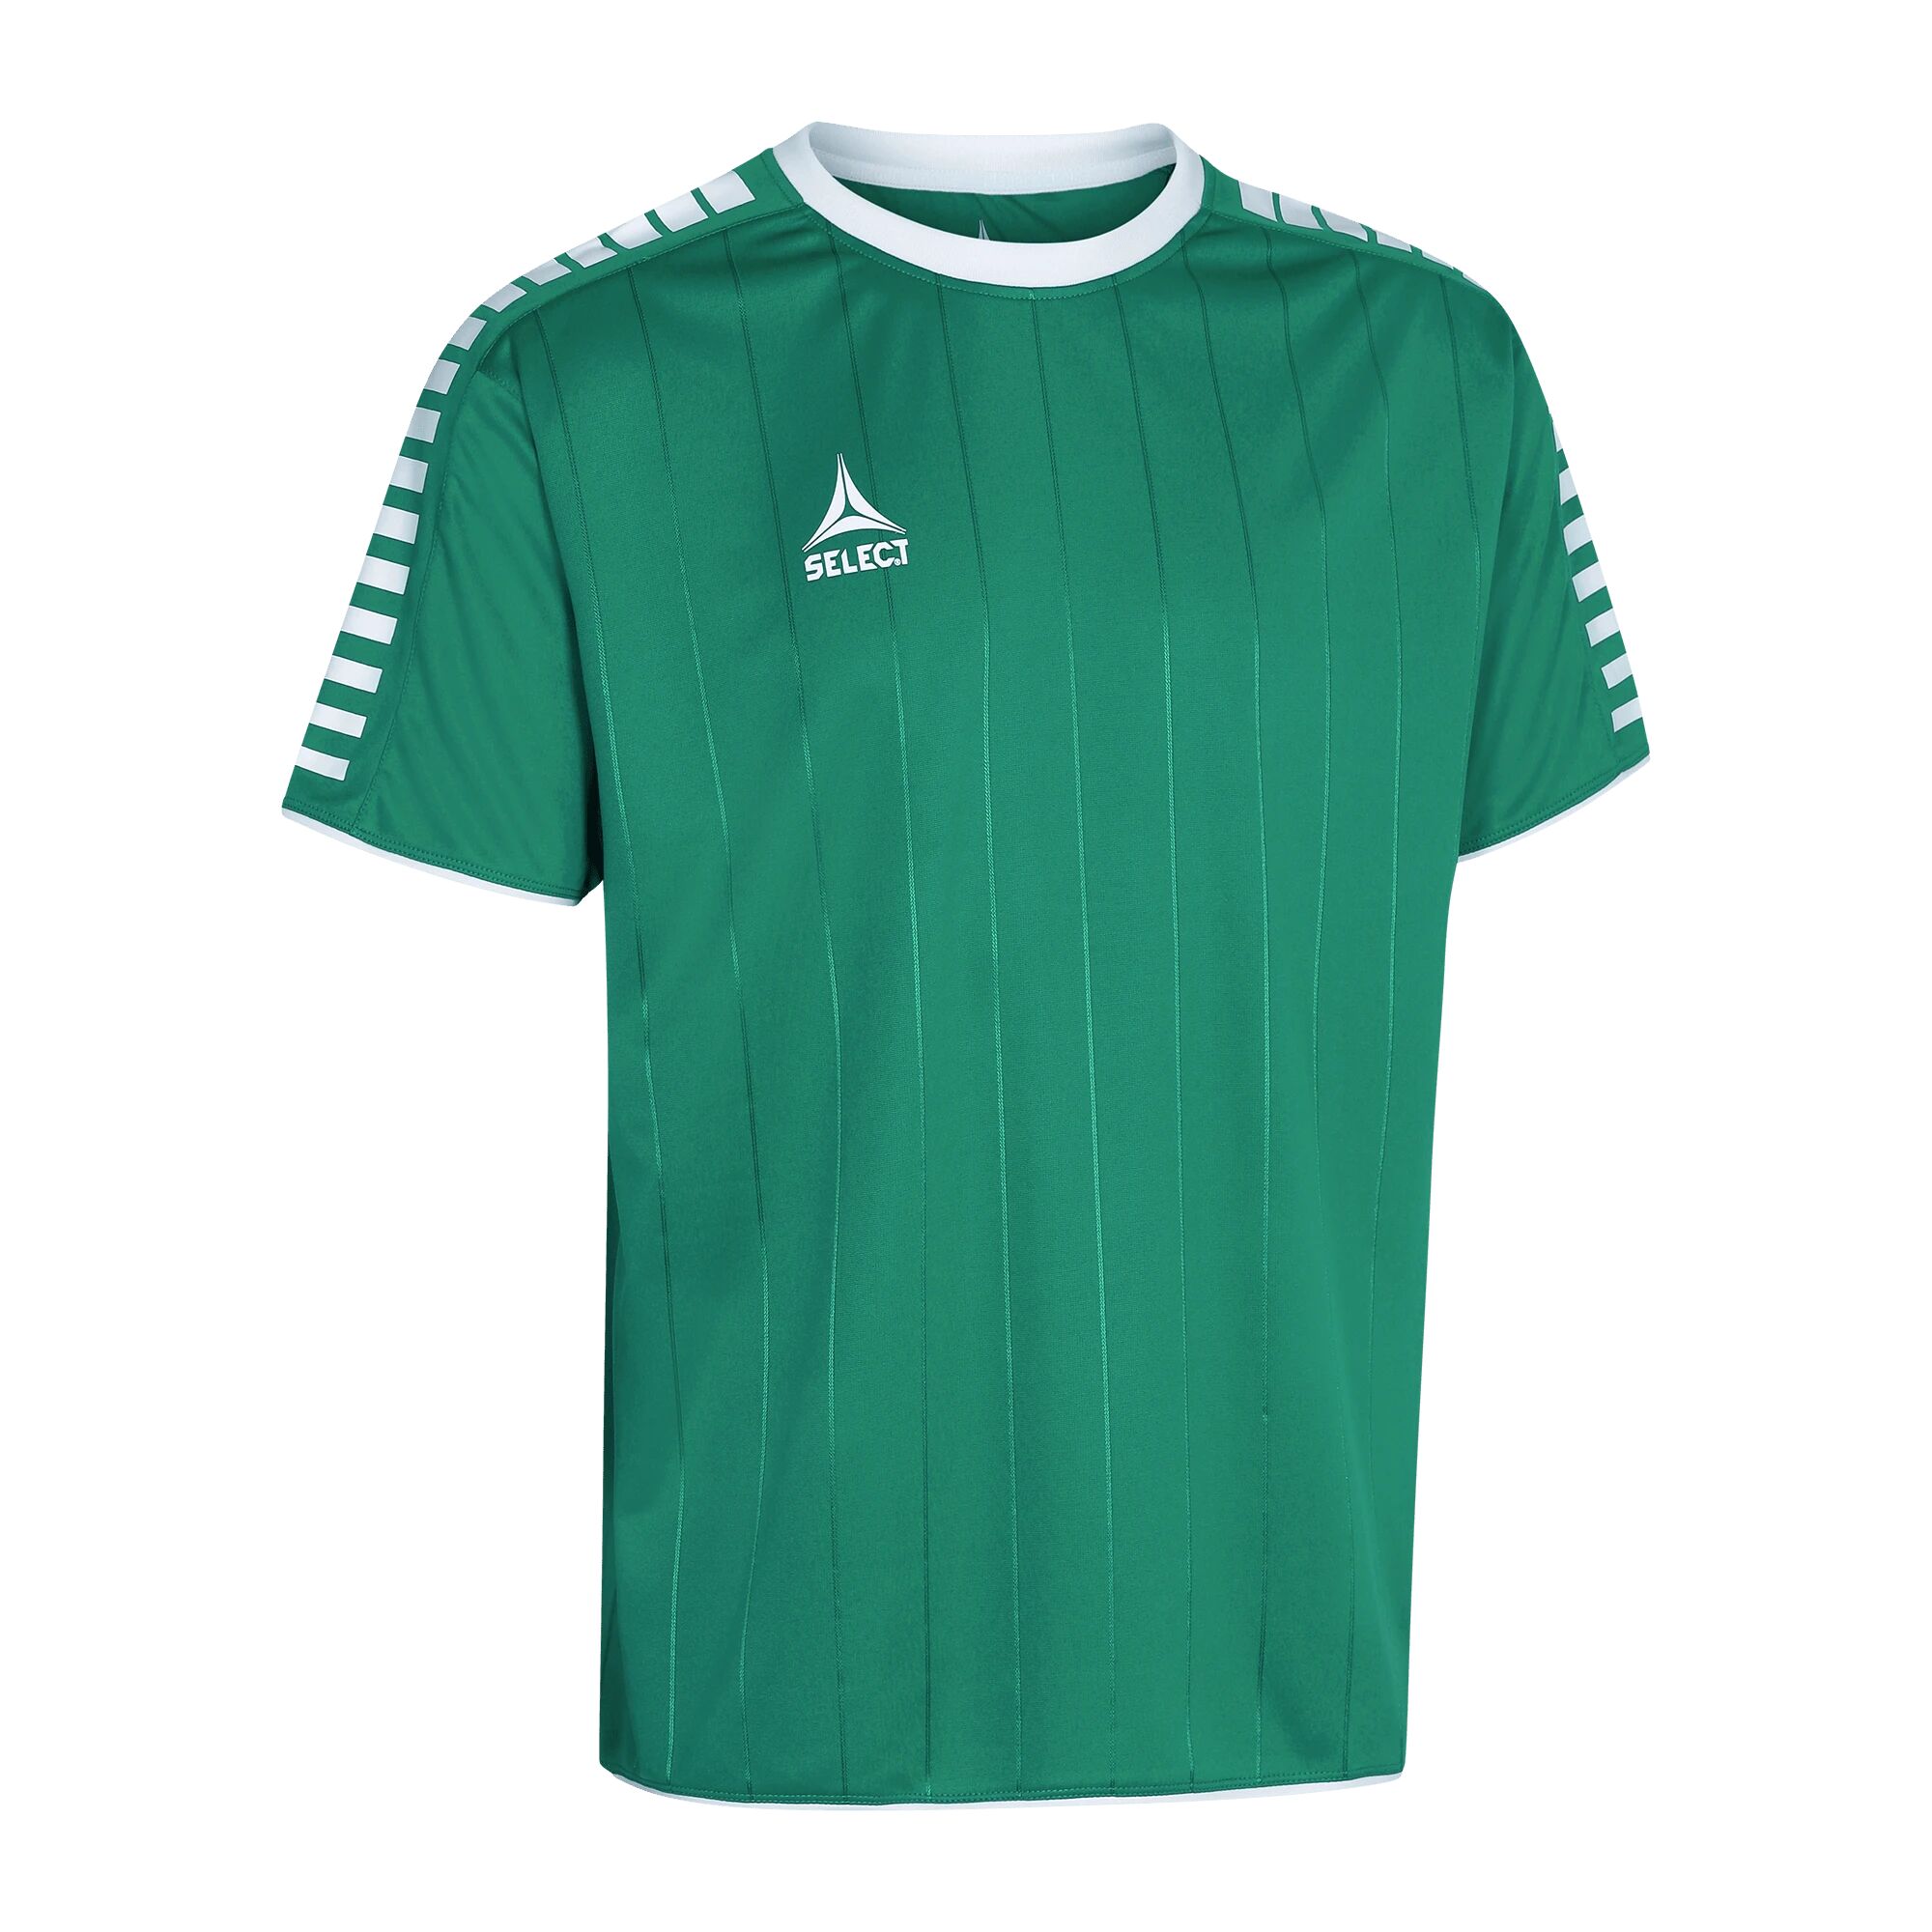 Select Player shirt S/S Argentina, fotballtrøye senior 164 Green